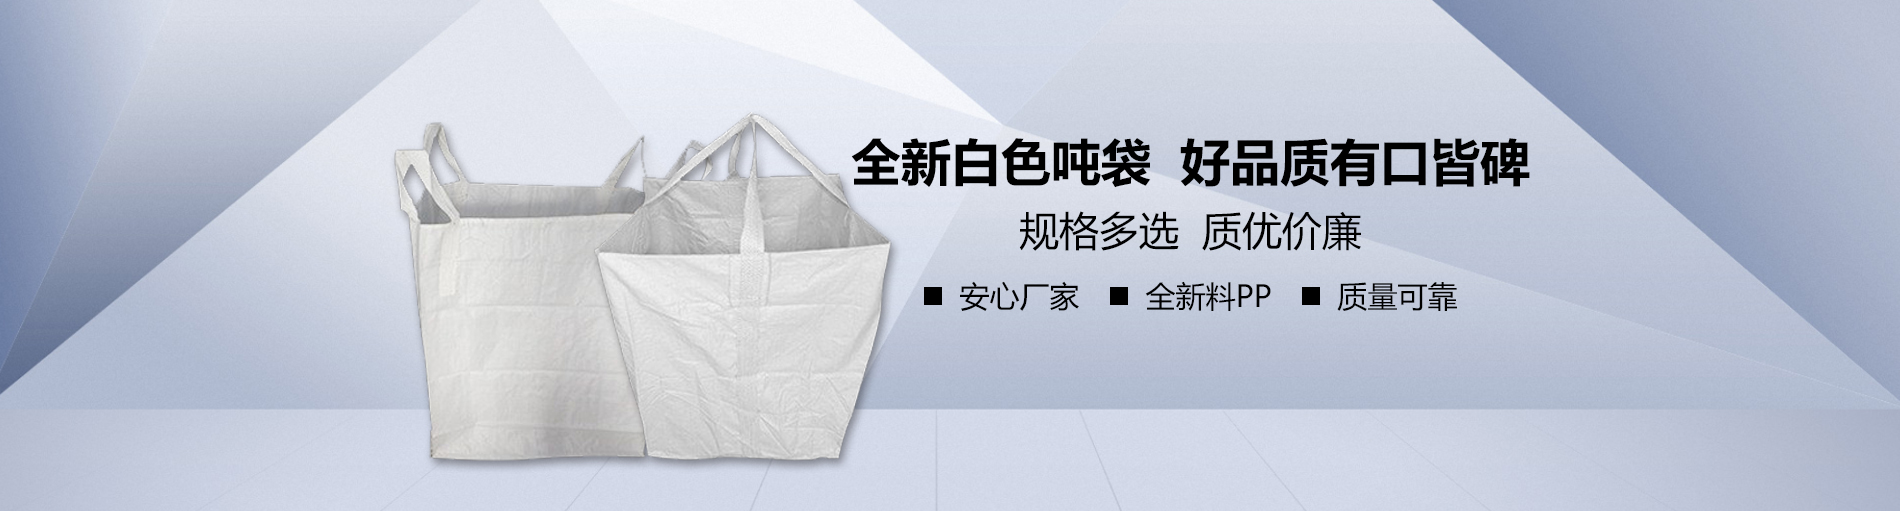 河南专业集装袋,吨包袋生产厂家-洛阳市亿鼎包装材料有限公司